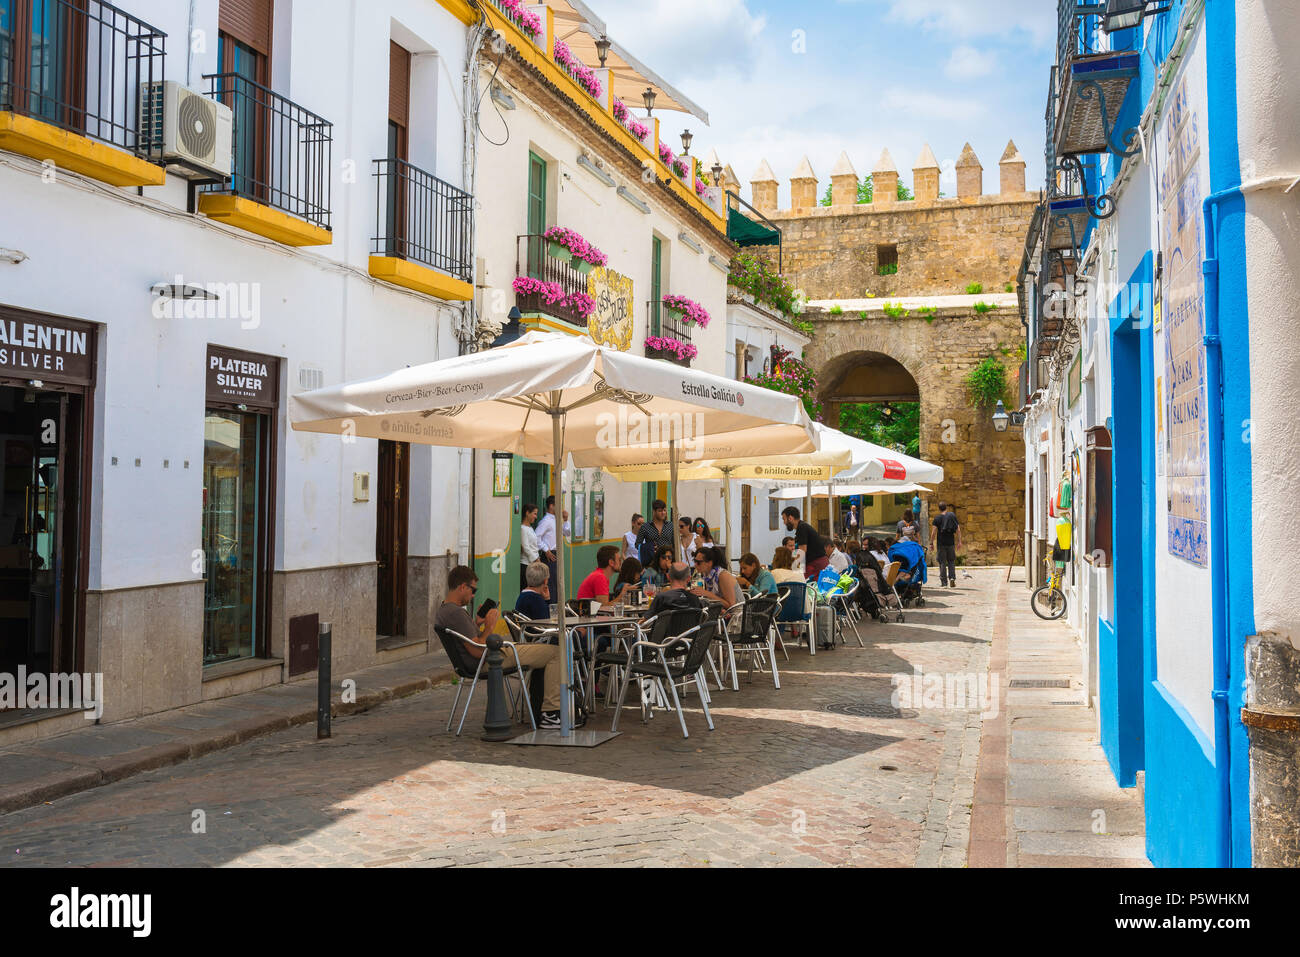 Cordoba Espagne cafe, avis de touristes se détendre sur une terrasse de café dans une rue du vieux quartier juif (Juderia) Trimestre de Cordoba (Cordoue) Andalousie, espagne. Banque D'Images